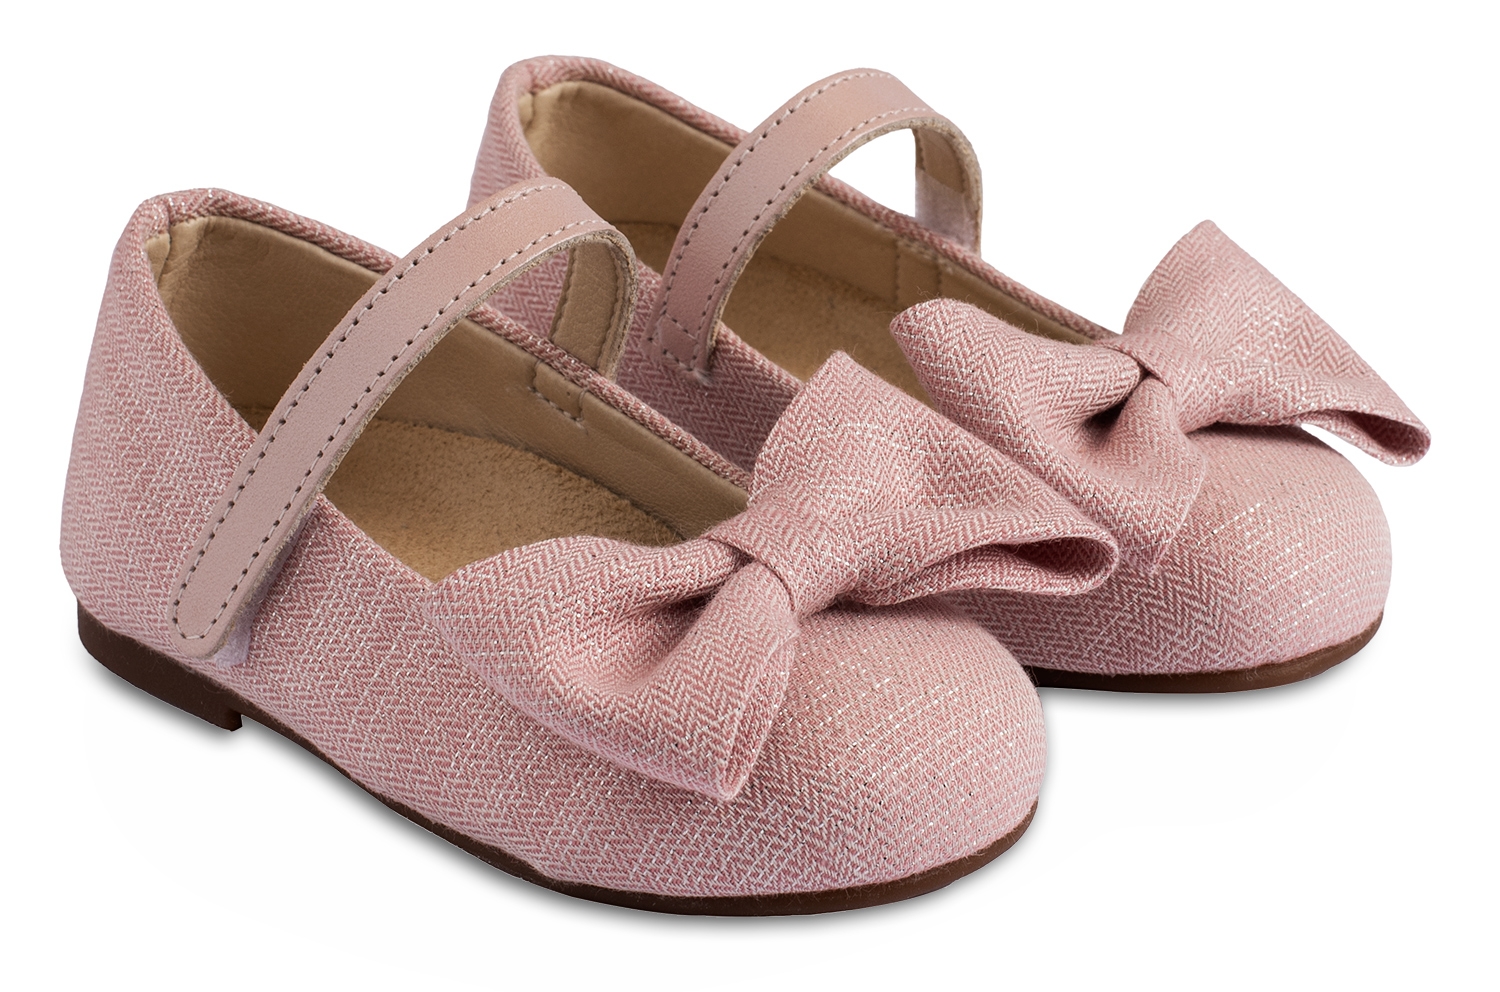 βαπτιστικό παπούτσι για κορίτσι γοβάκι κομψό ροζ με φιόγκο λινό babywalker : 1